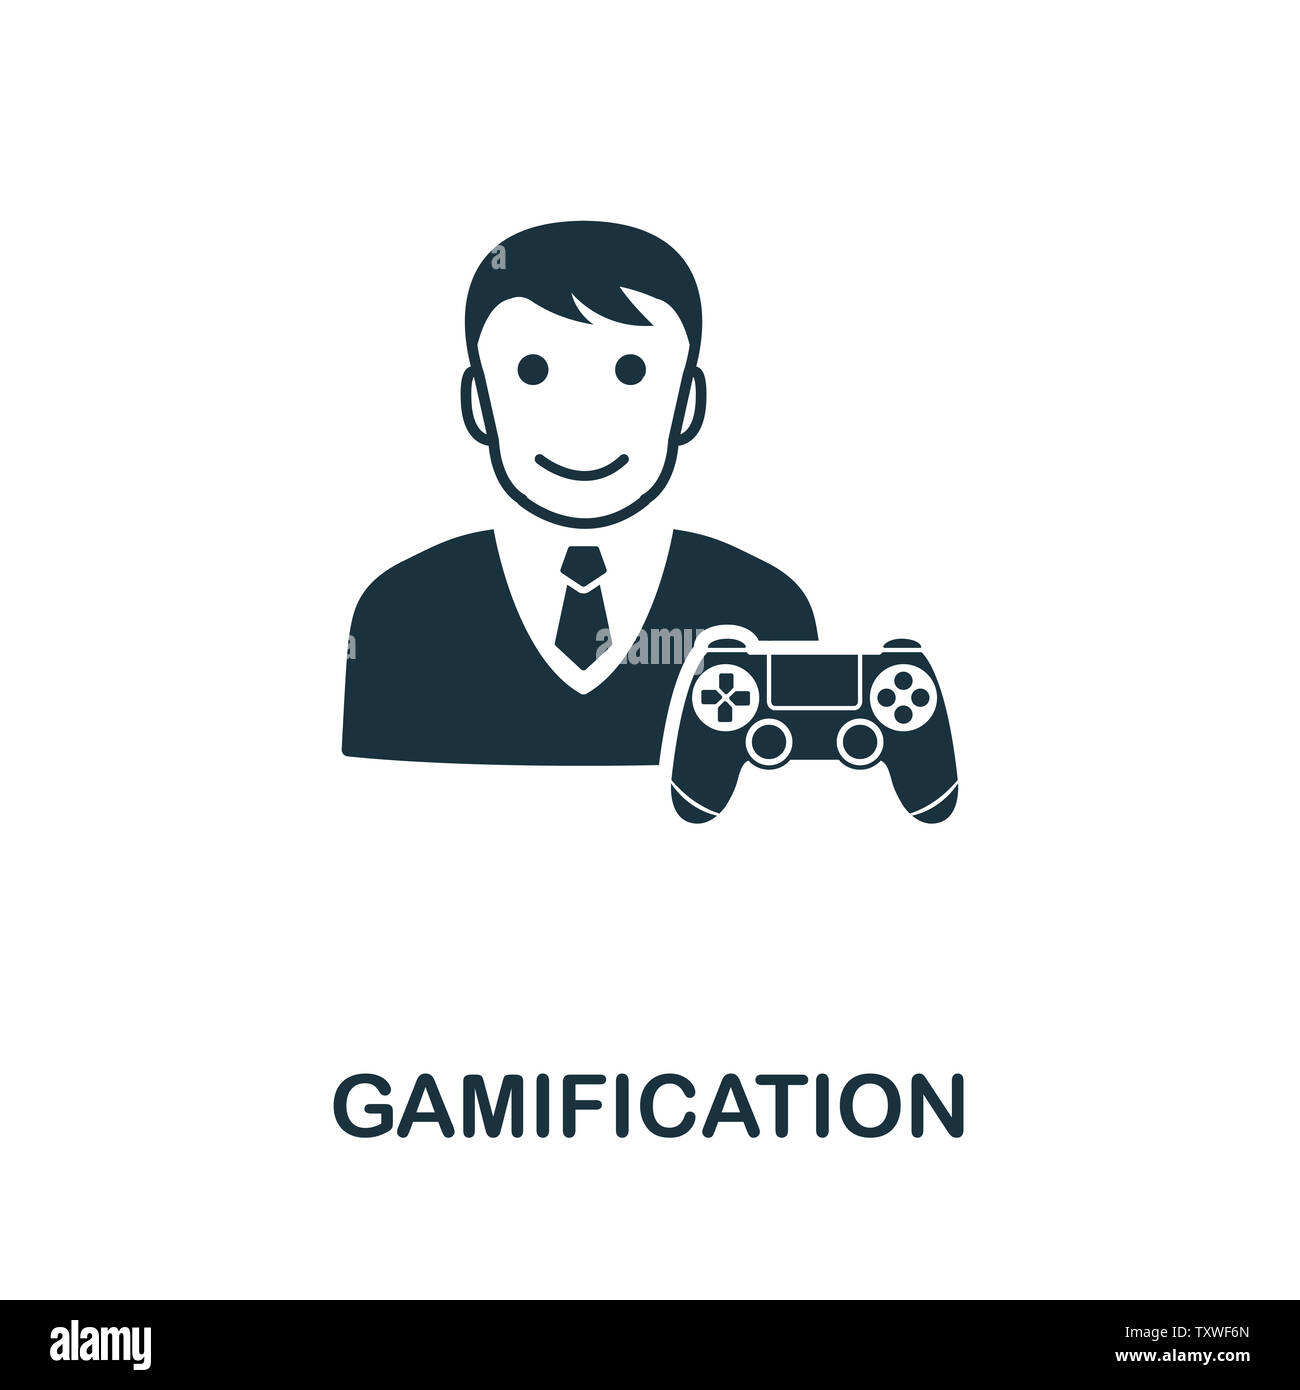 Symbole de l'icône de gamification. Signe créatif de la collection Icons. Icône de gamification plate pour ordinateur et mobile Banque D'Images